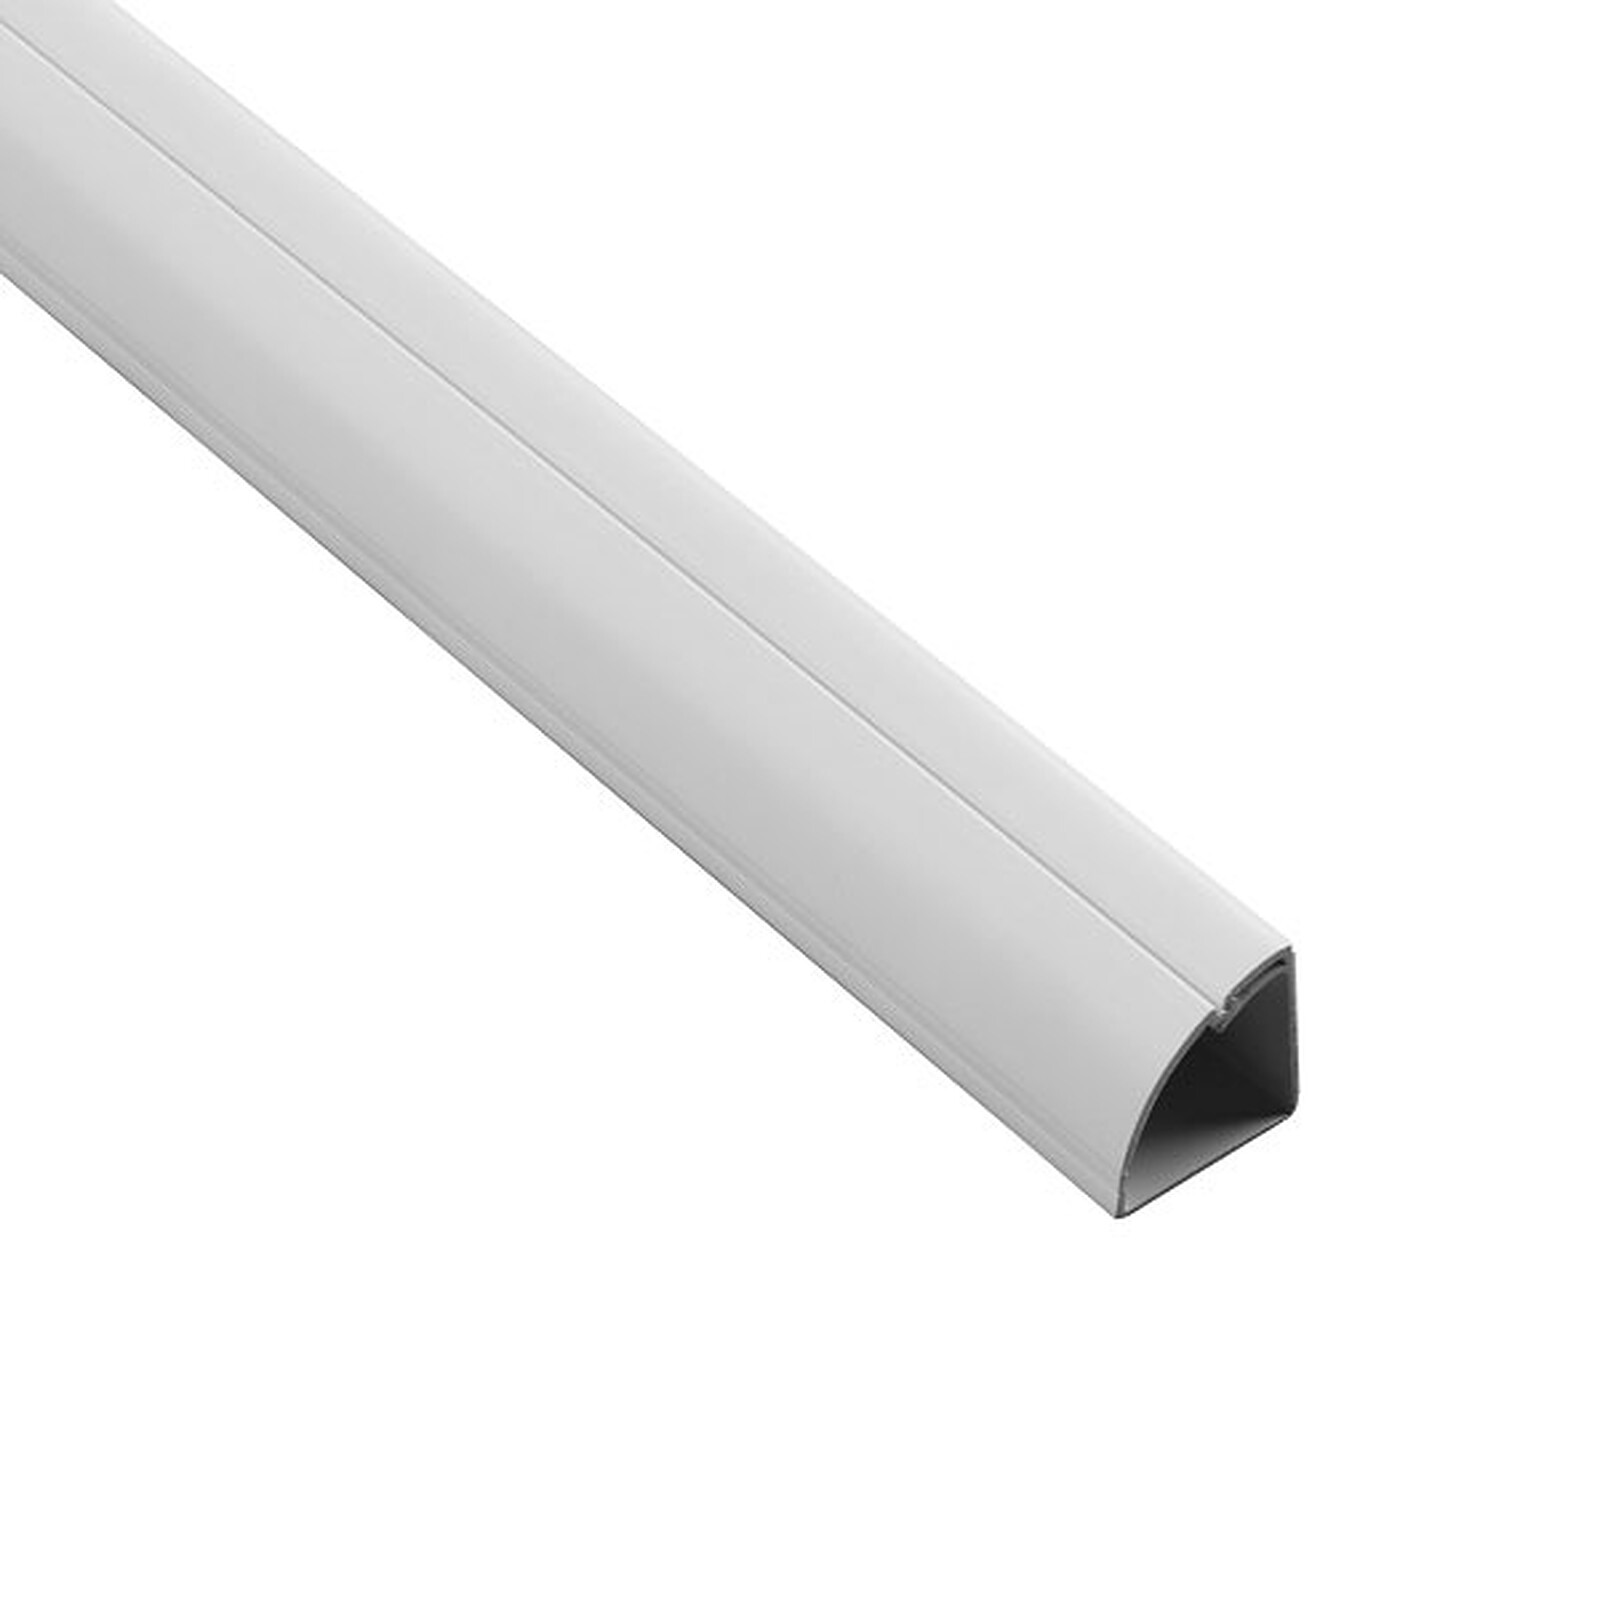 D-Line moulure blanche 22 mm x 22 mm - Passe câble - Garantie 3 ans LDLC